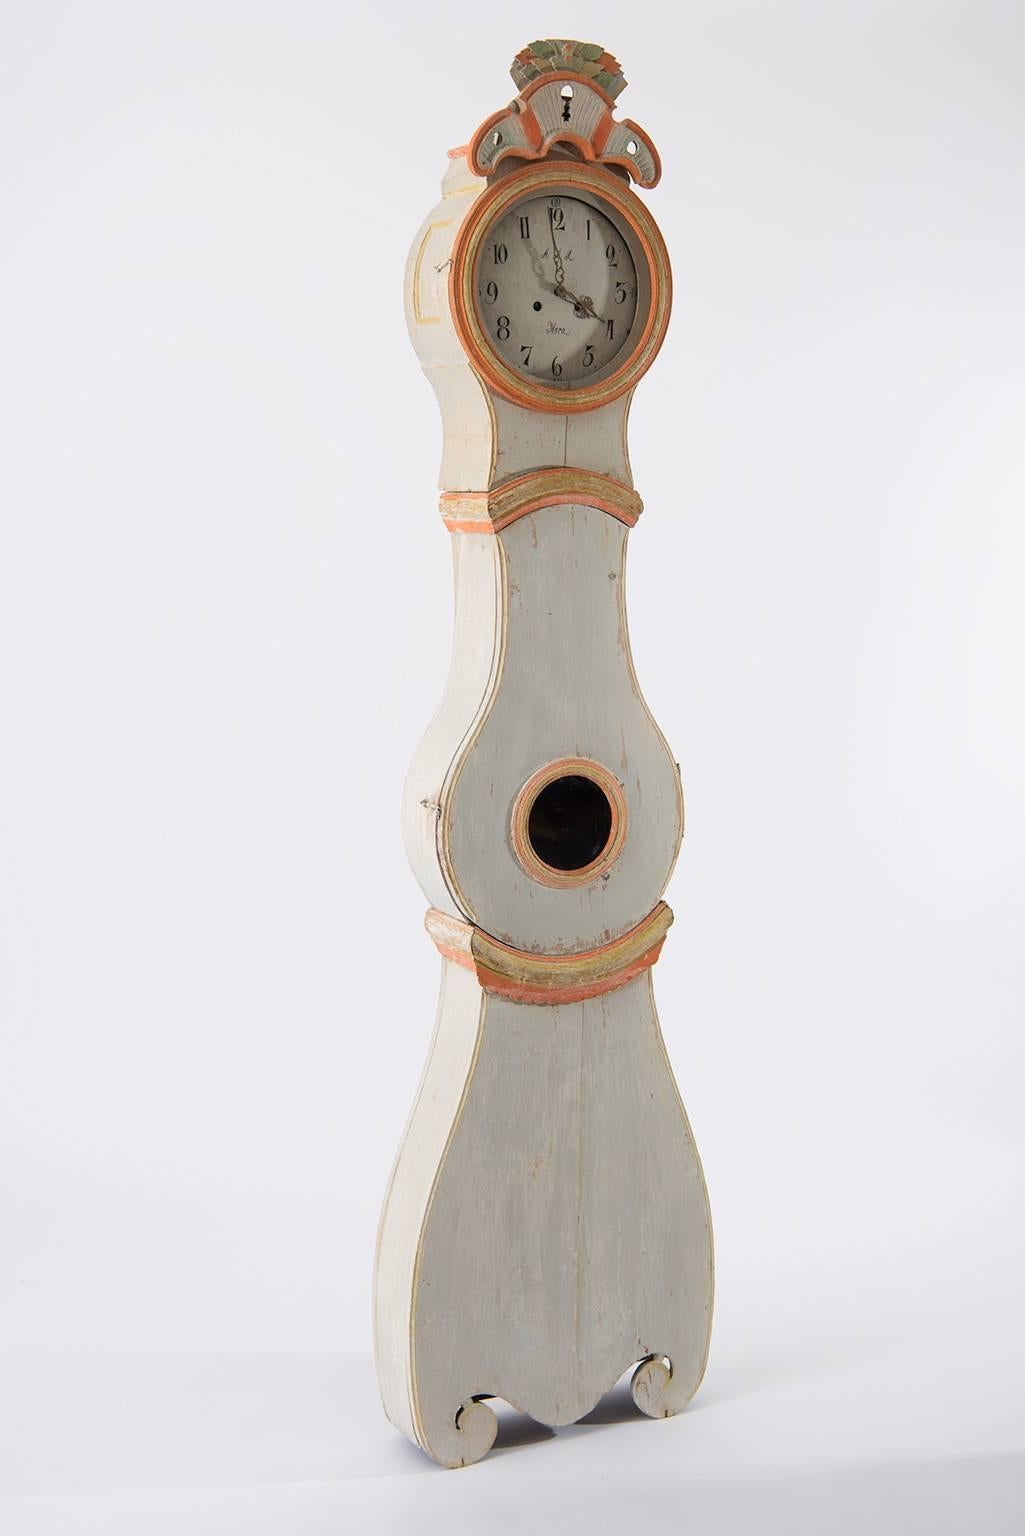 Pendule rococo à long boîtier du nord de la Suède, fabriquée au cours des premières années du 19e siècle. L'horloge à long boîtier, ou horloge Mora comme on les appelle parfois, est grattée à sec jusqu'à la peinture d'origine. L'intérieur de